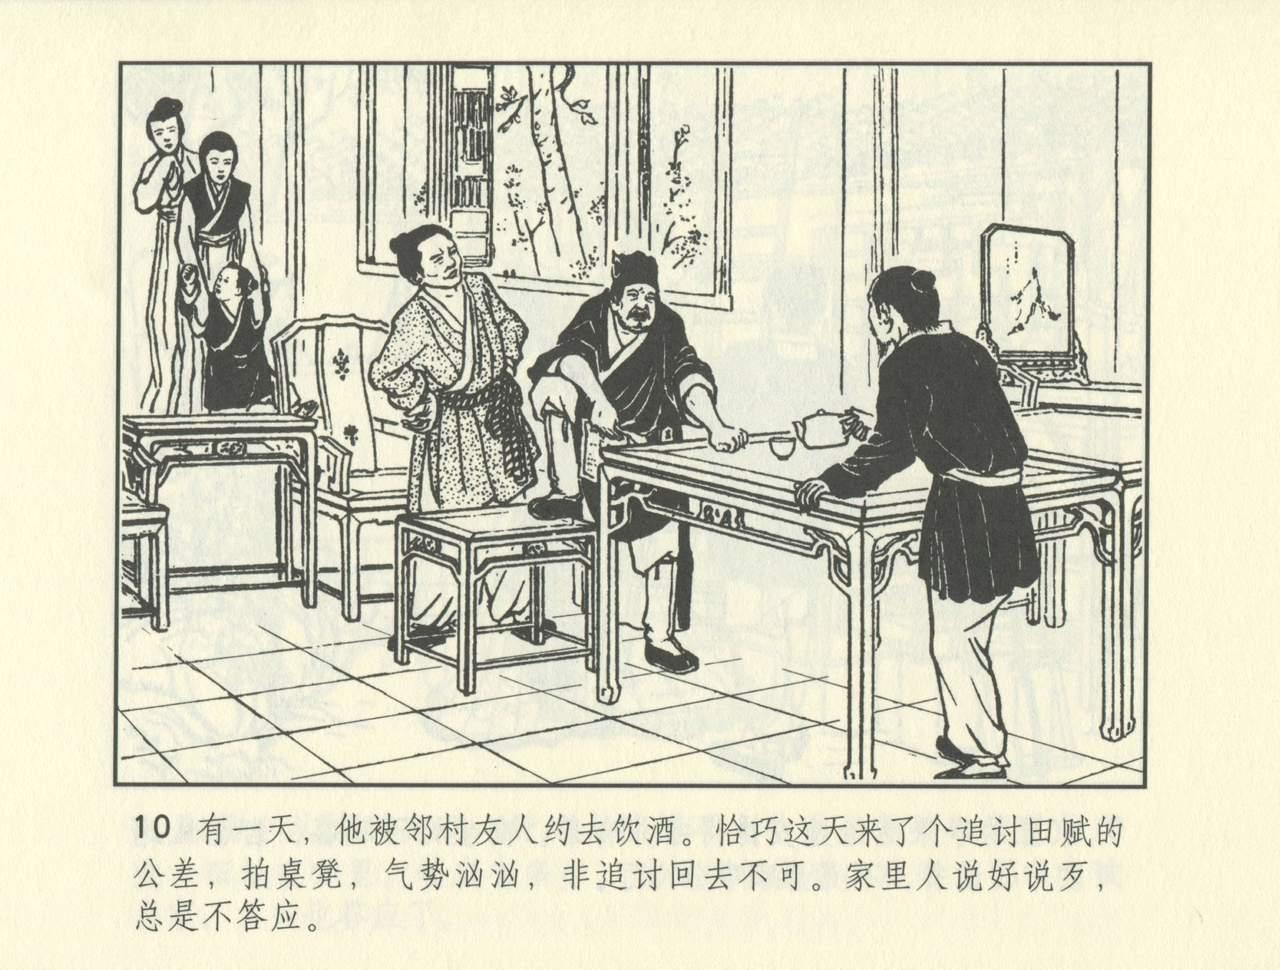 聊斋志异 张玮等绘 天津人民美术出版社 卷二十一 ~ 三十 482